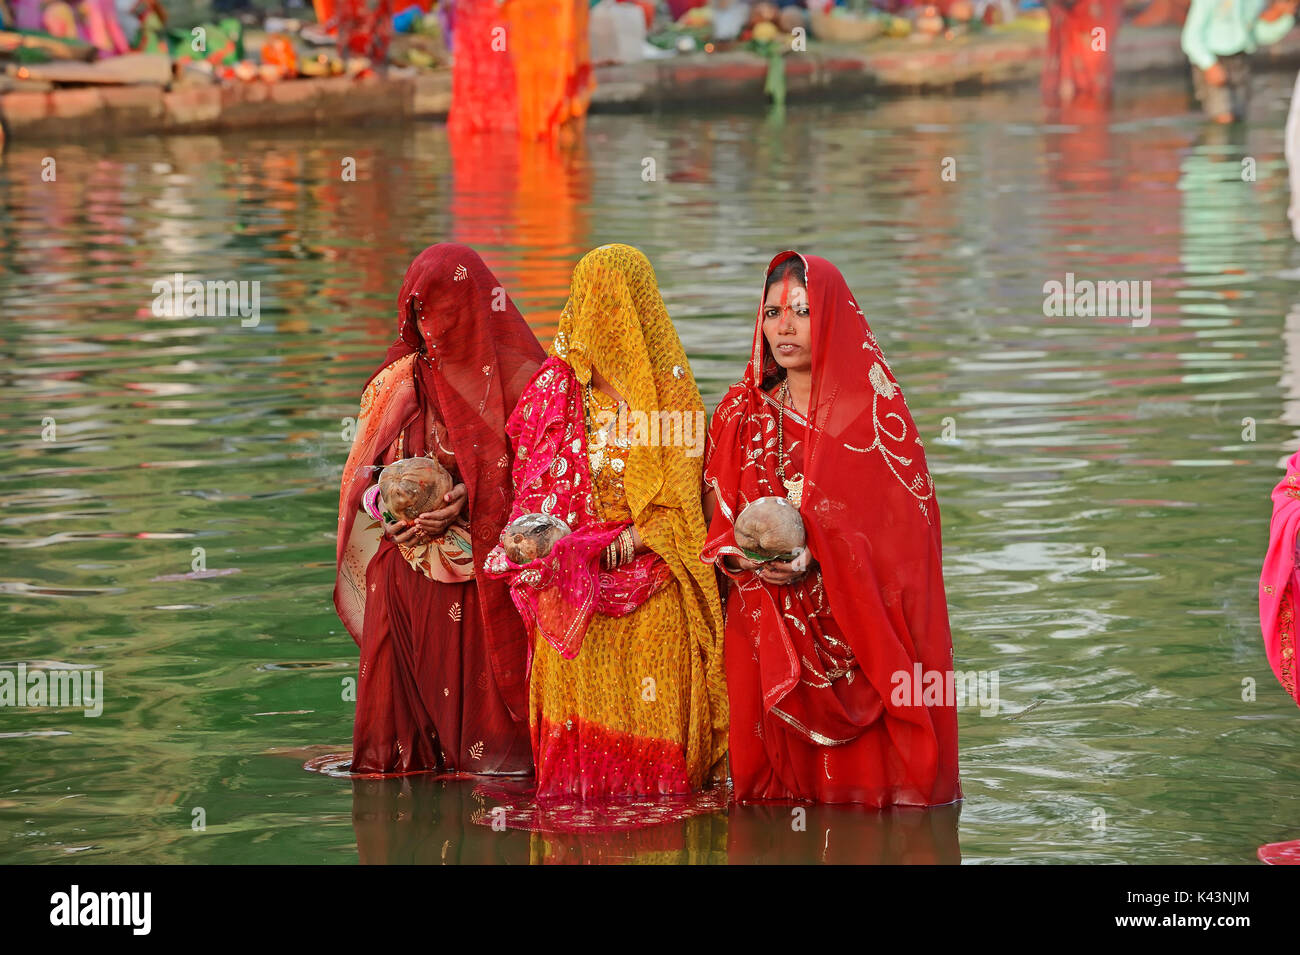 Donne indù al festival Chhath, New Delhi, India | Hindu-Frauen beim hinduistischen Chhath Fest, Neu-Delhi, Indien Foto Stock